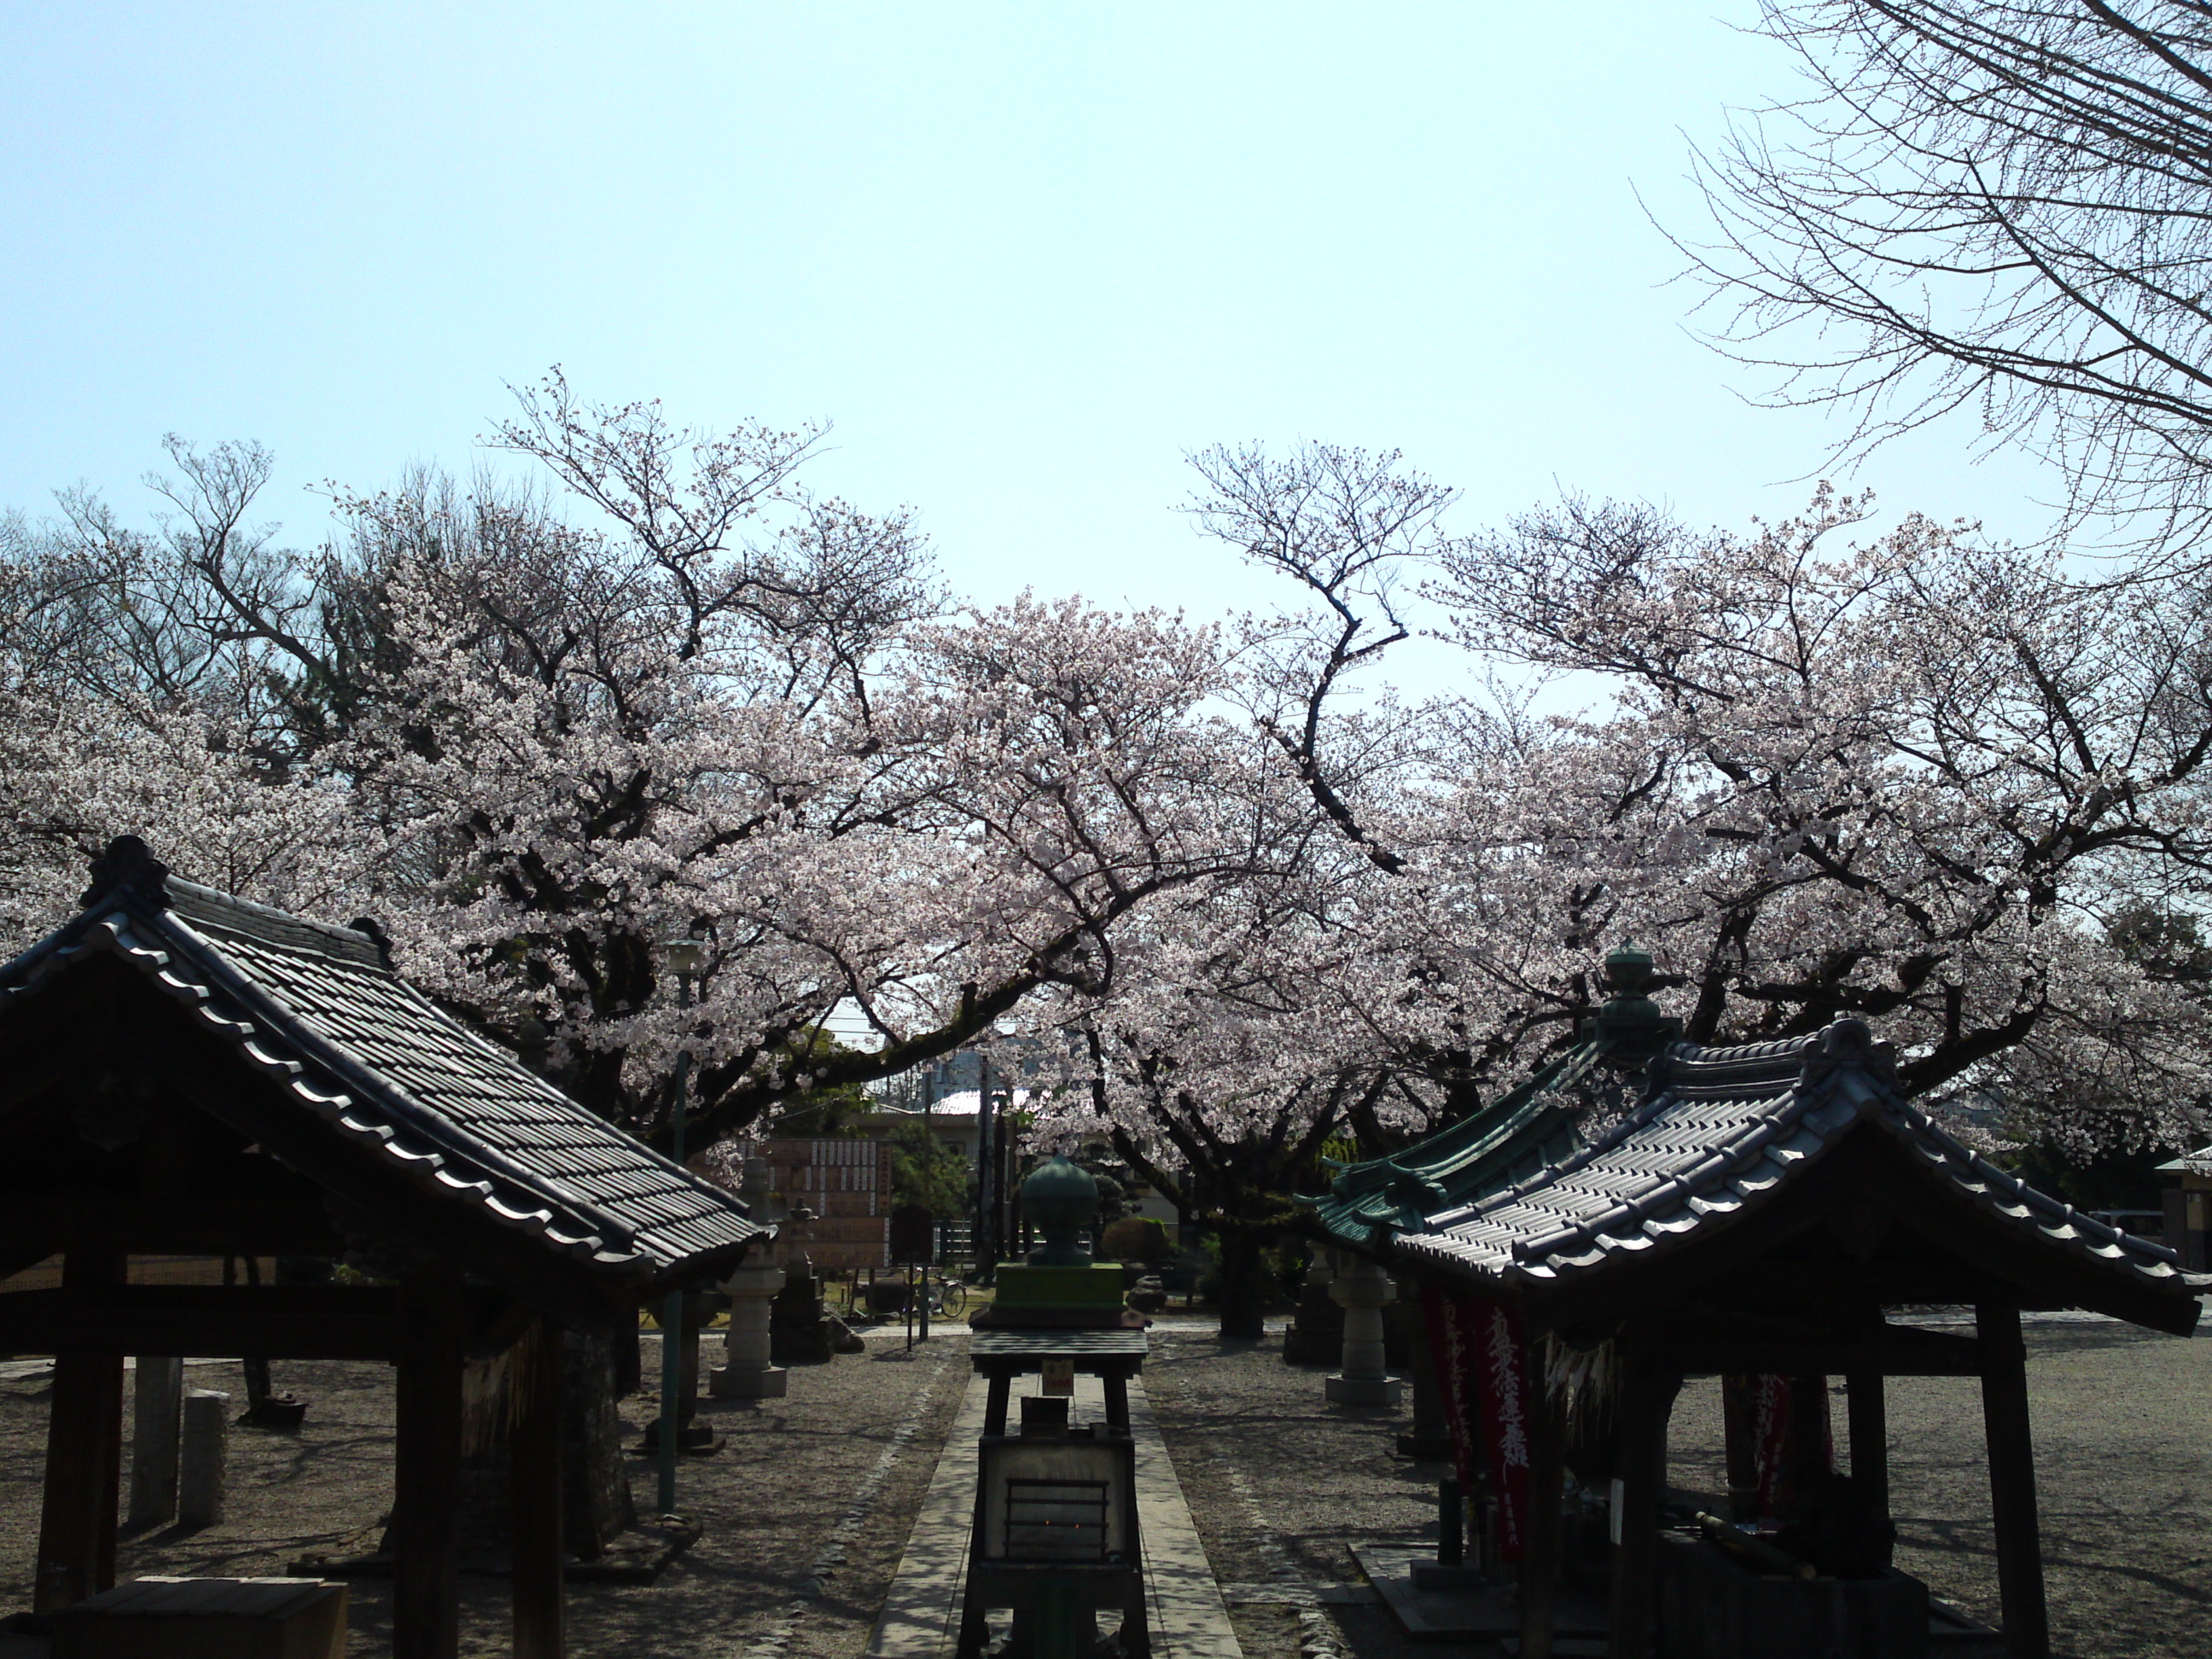 2020年法華経寺祖師堂参道に咲く桜の花々